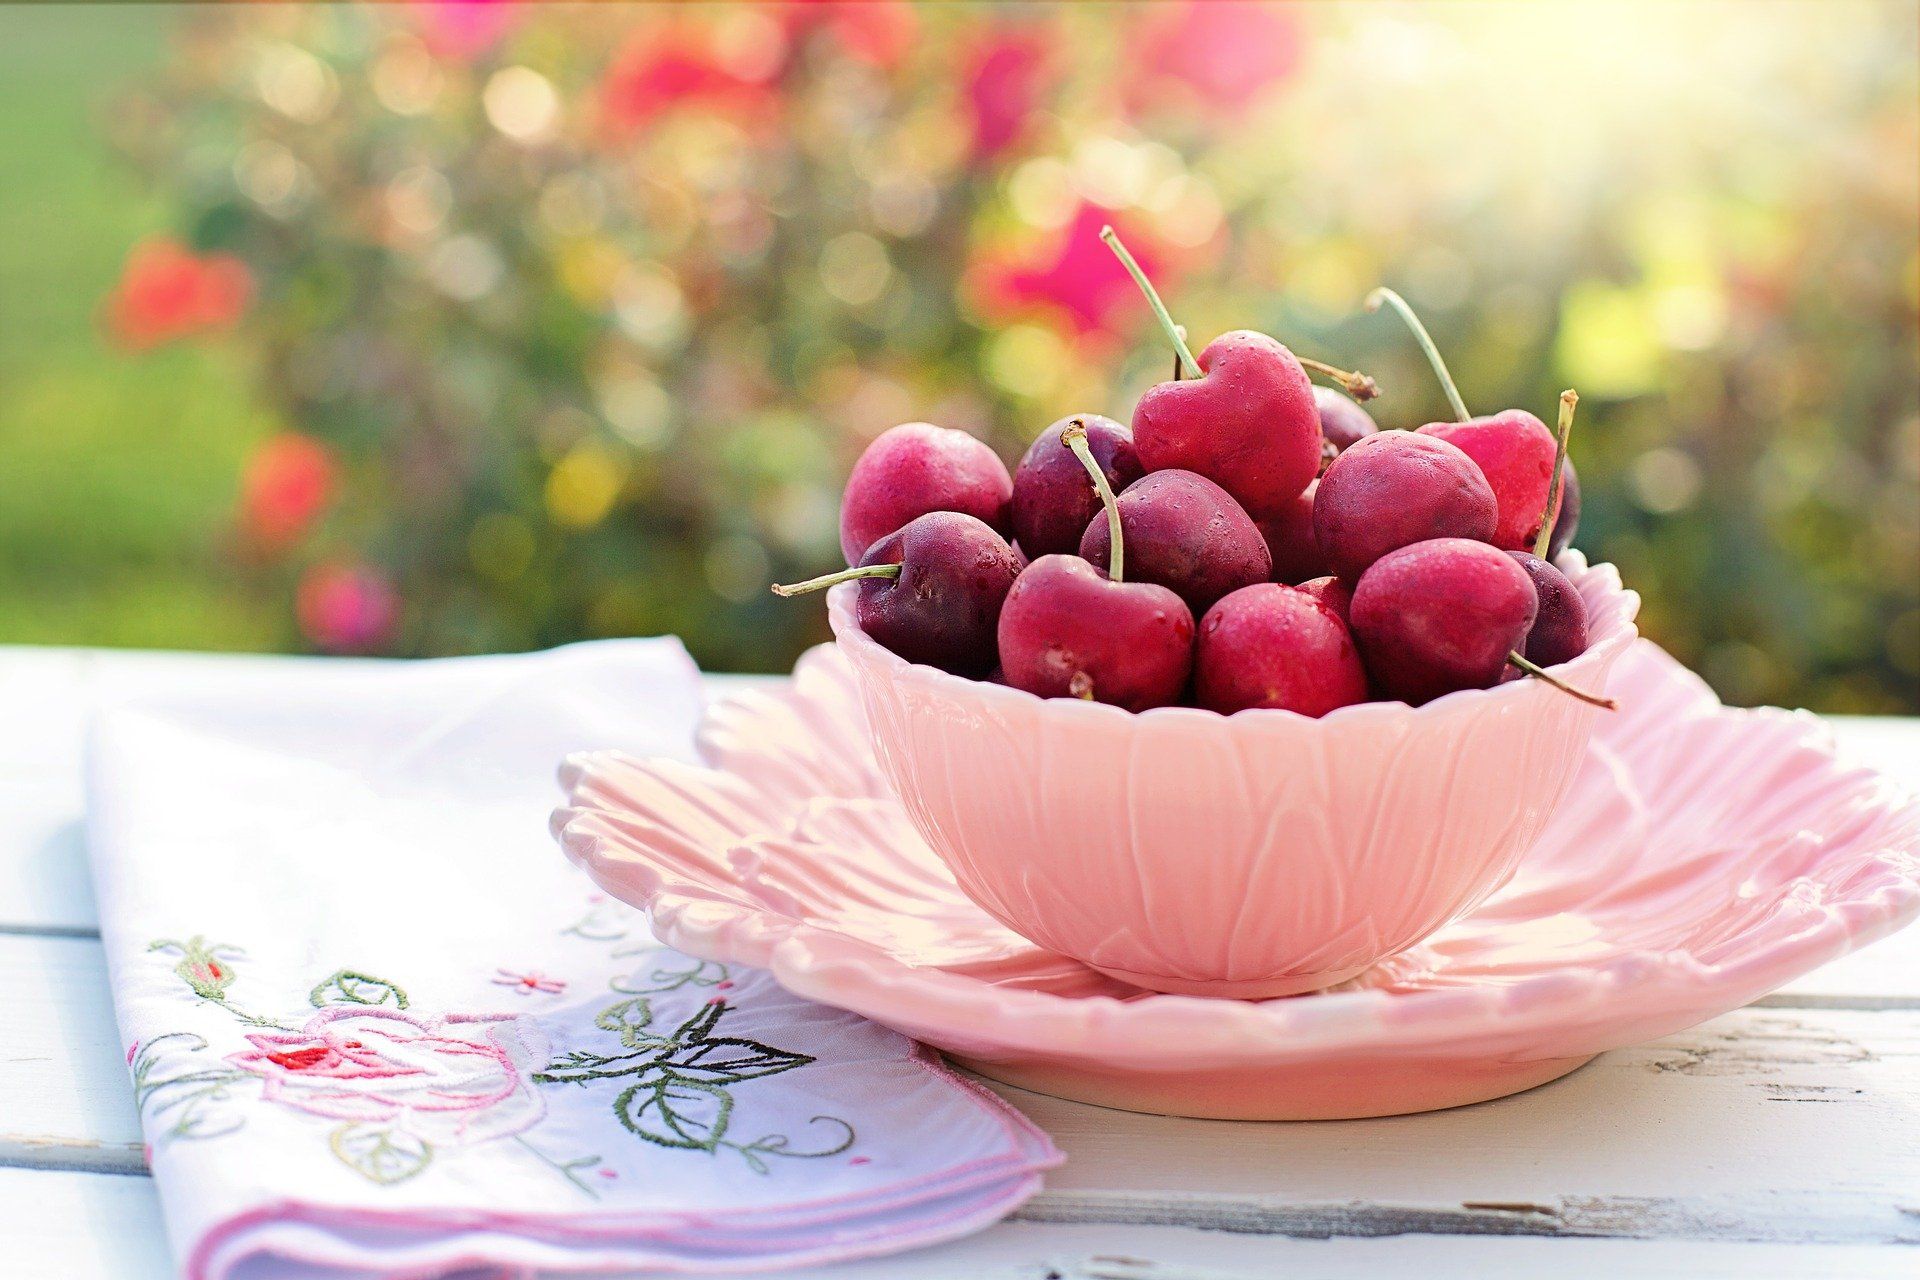 Biasa dikenal sebagai dekorasi hidangan, ternyata buah ceri memiliki manfaat kesehatan bagi tubuh. Salah satunya bisa menurunkan asam urat.